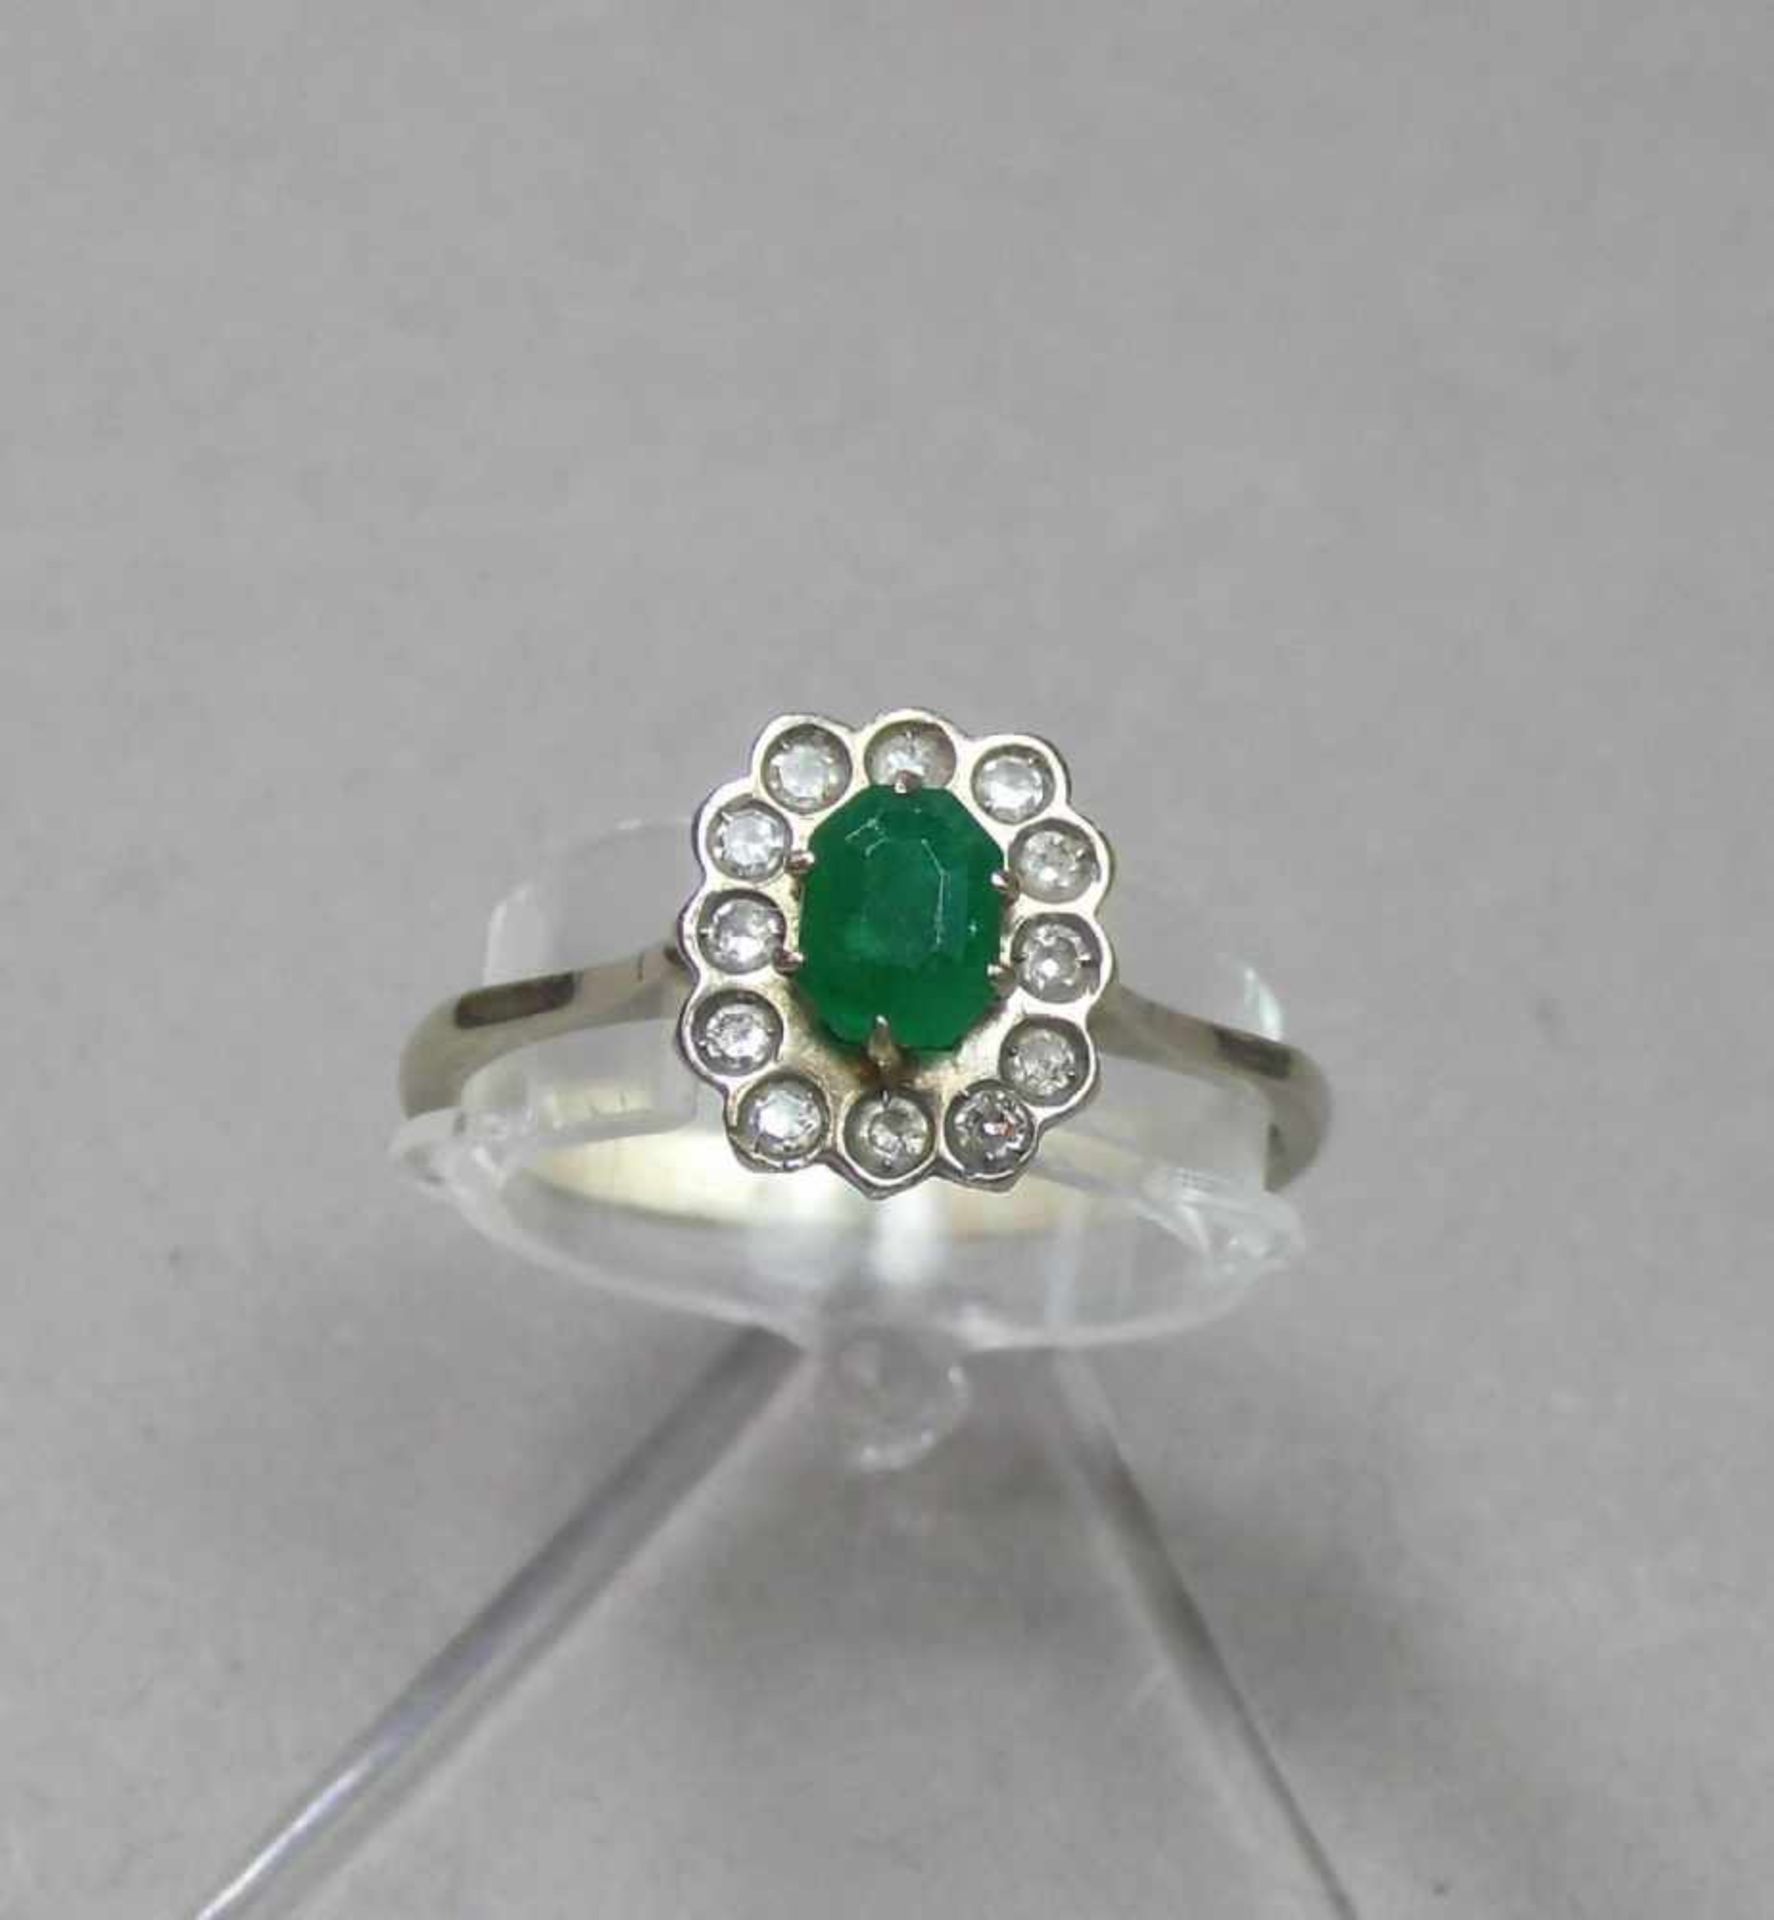 RING, besetzt mit einem ovalen Smaragd, umgeben von einer Vielzahl kleiner Brillanten; 750er